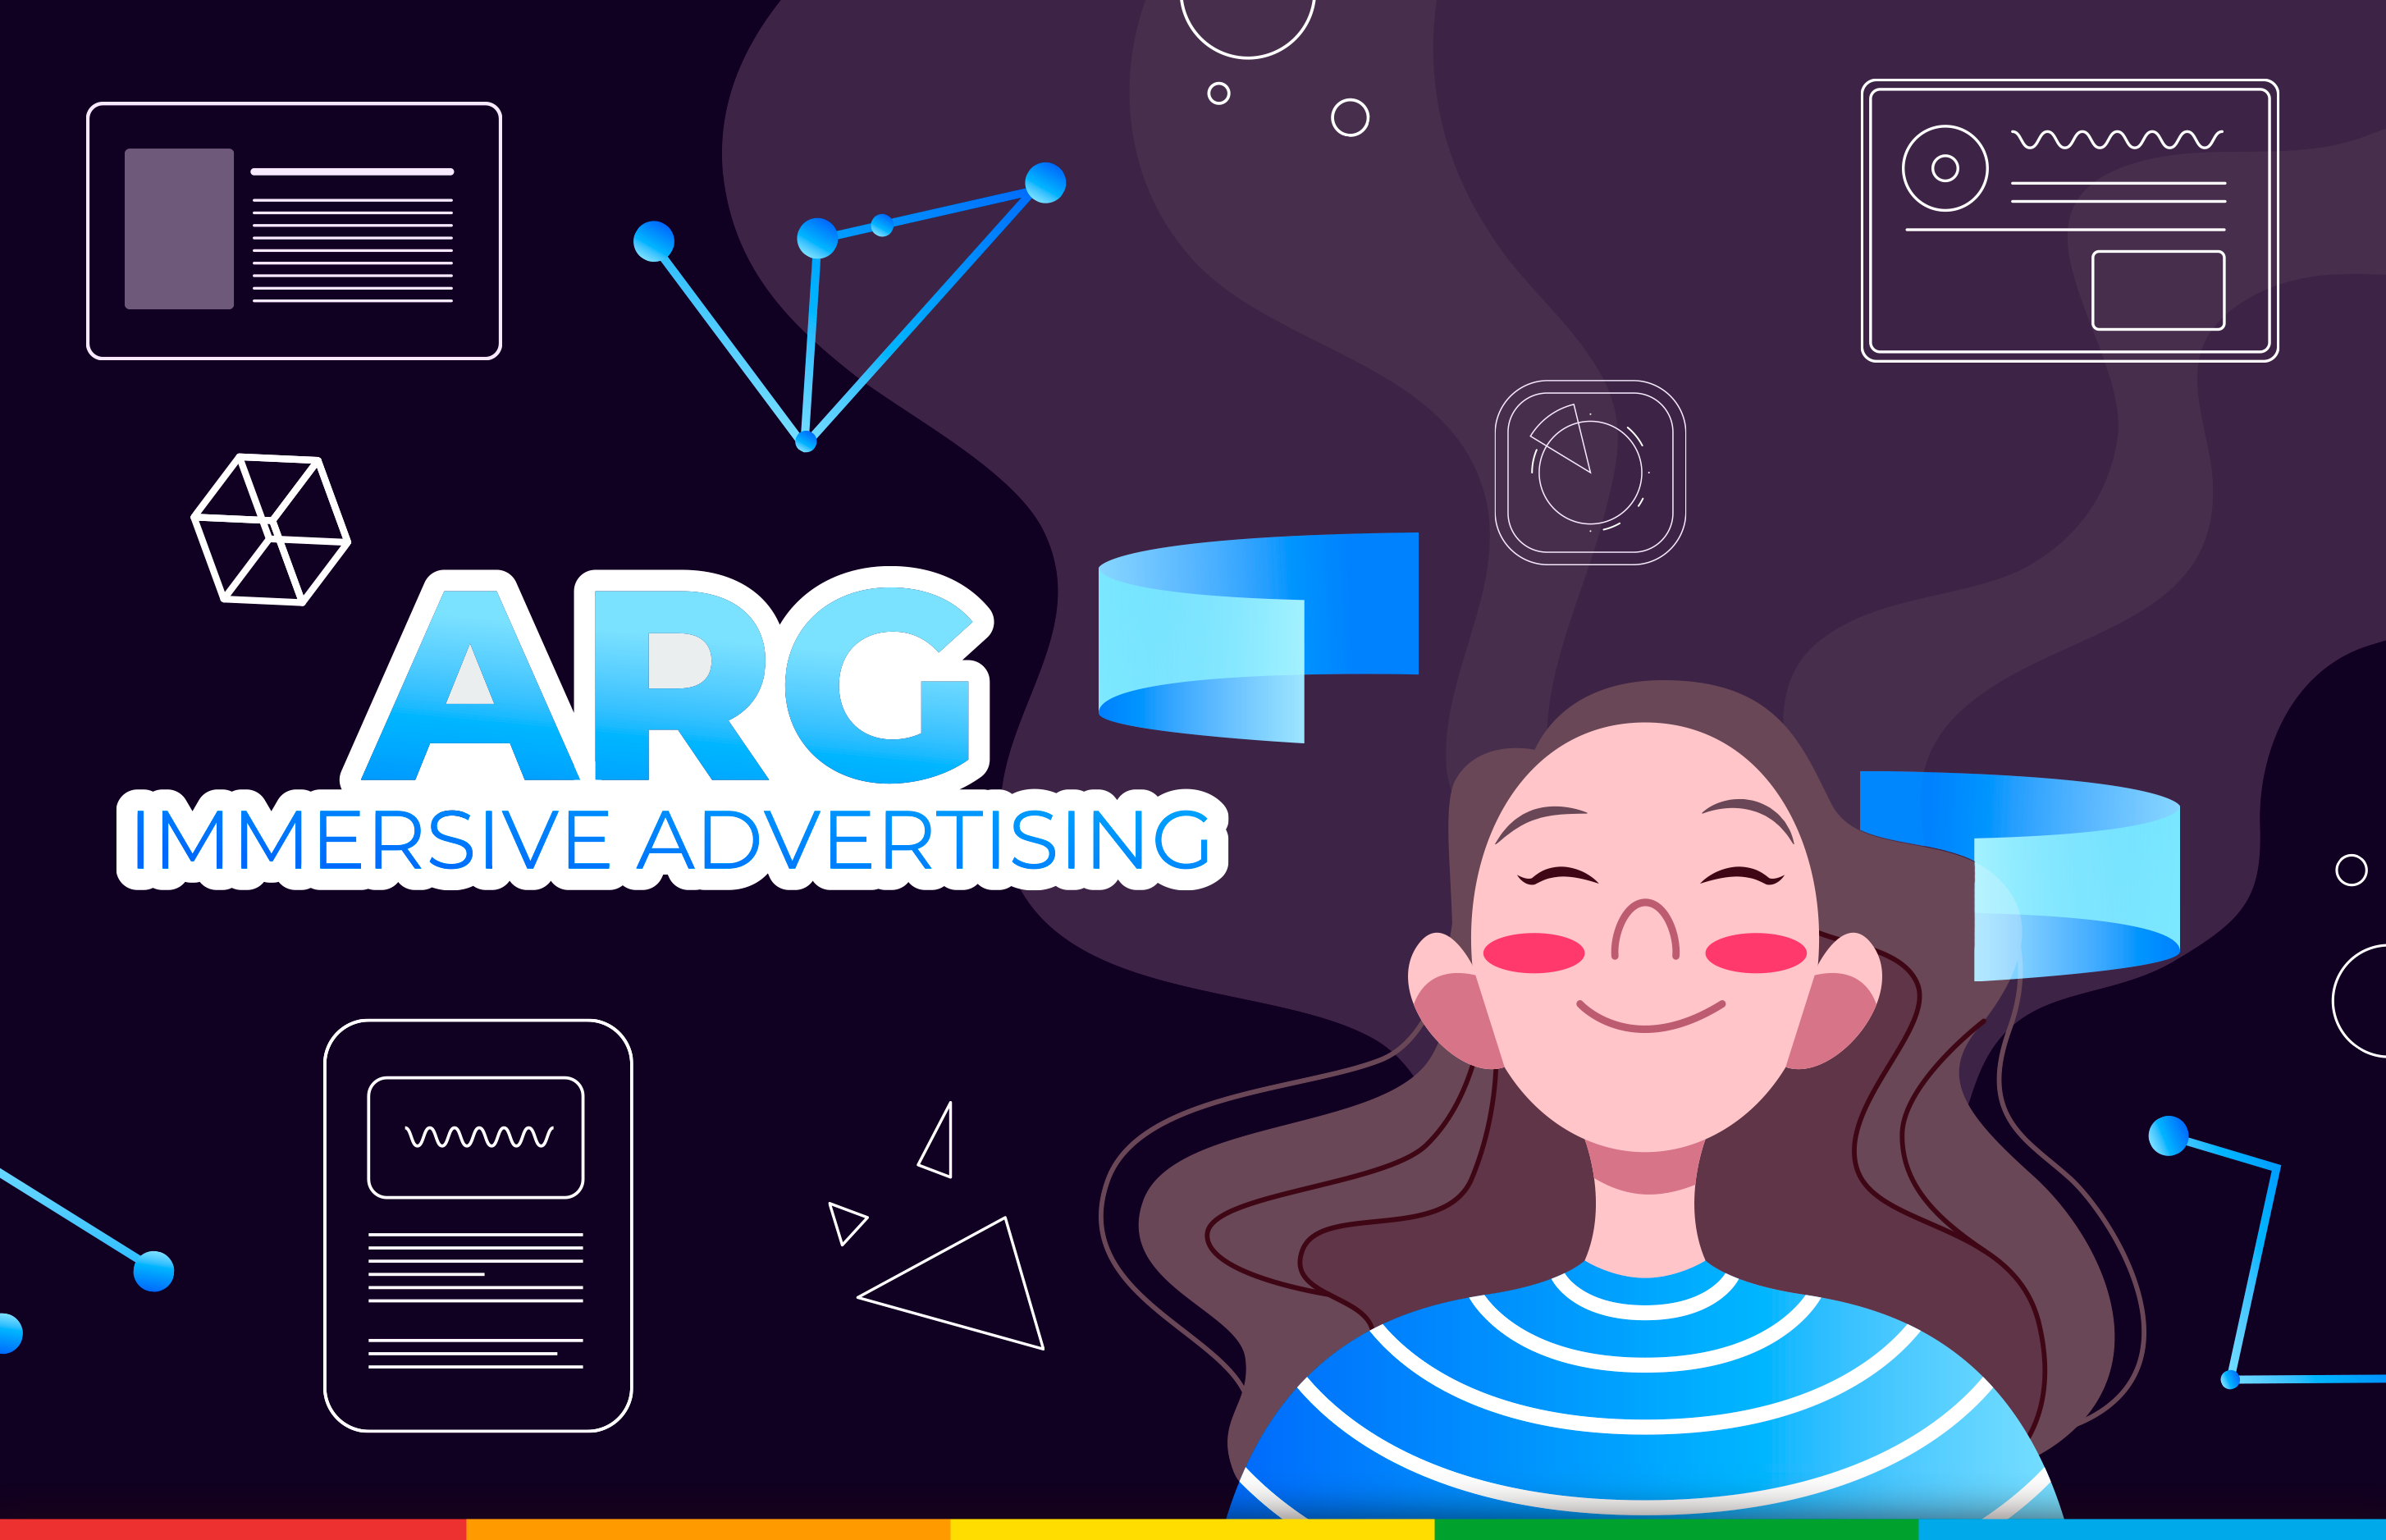 Immersive Advertising: ARG